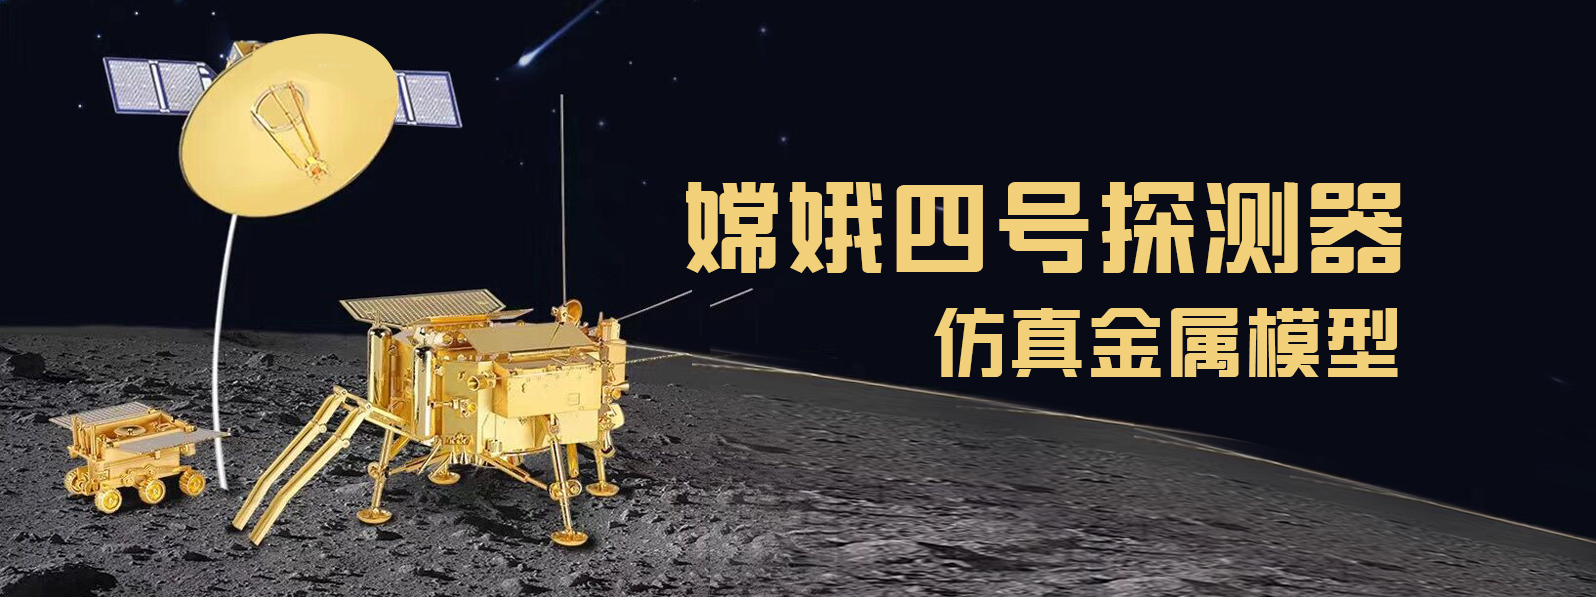 嫦娥四号探测器仿真模型